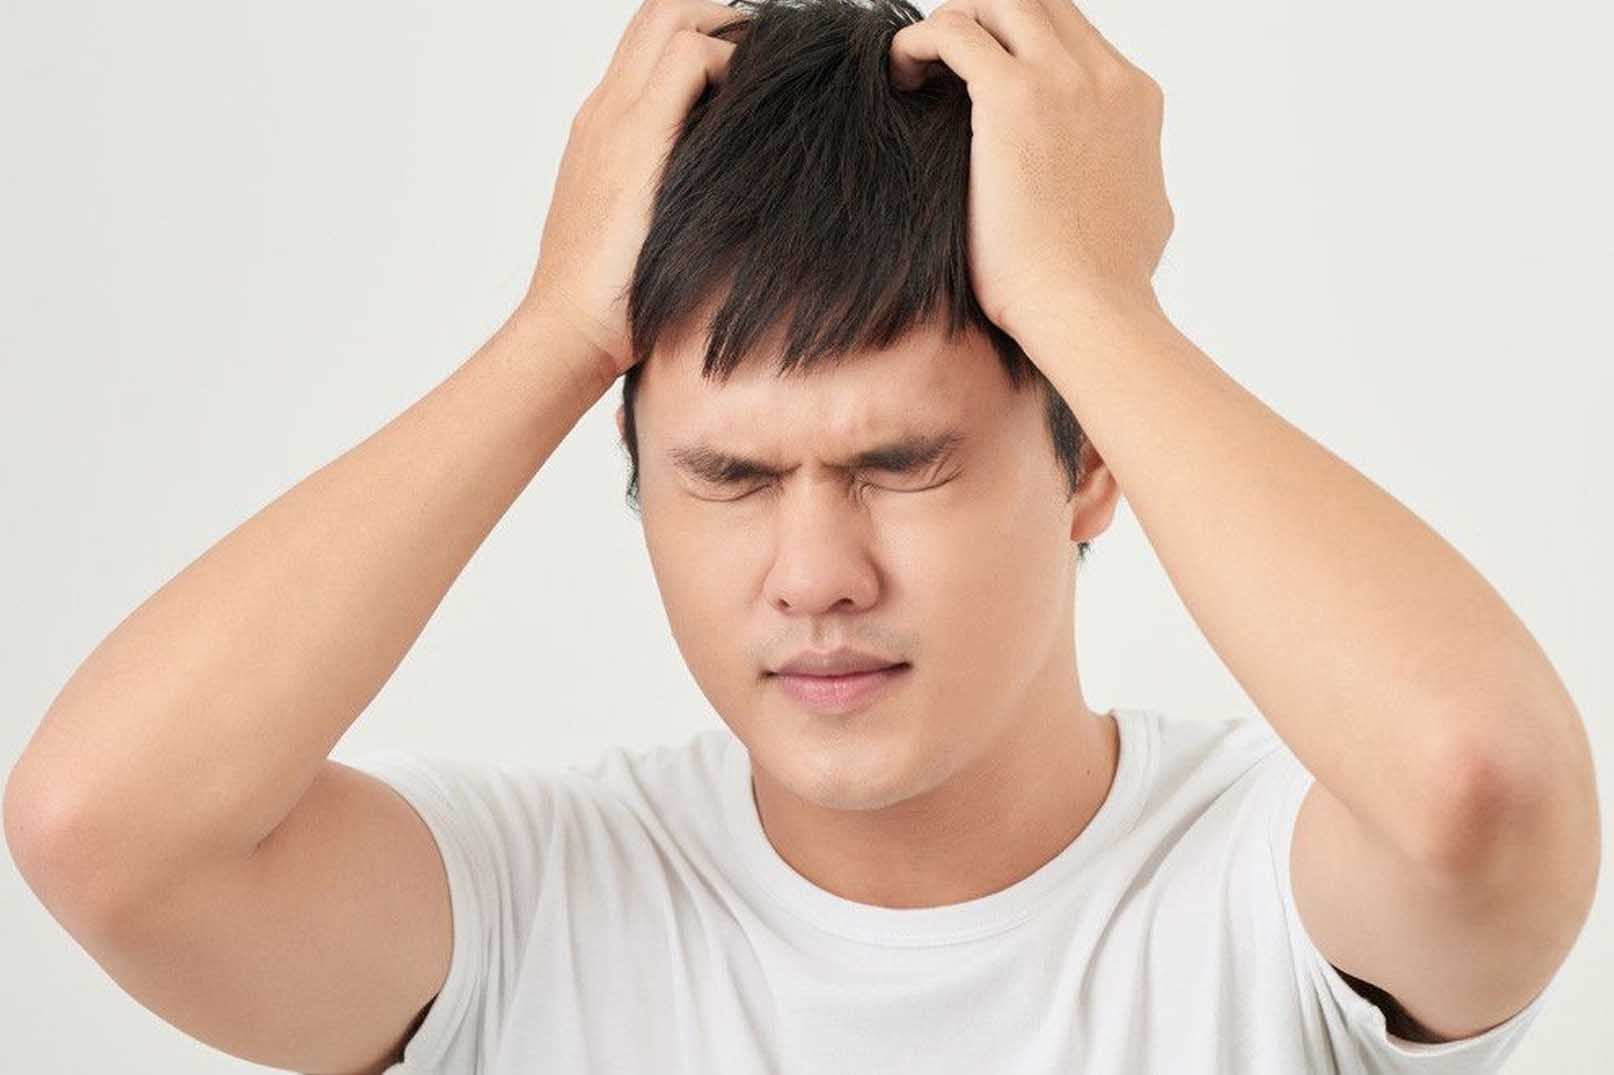 Mengatasi Sakit Kepala: Panduan Praktis untuk Meredakan Ketidaknyamanan